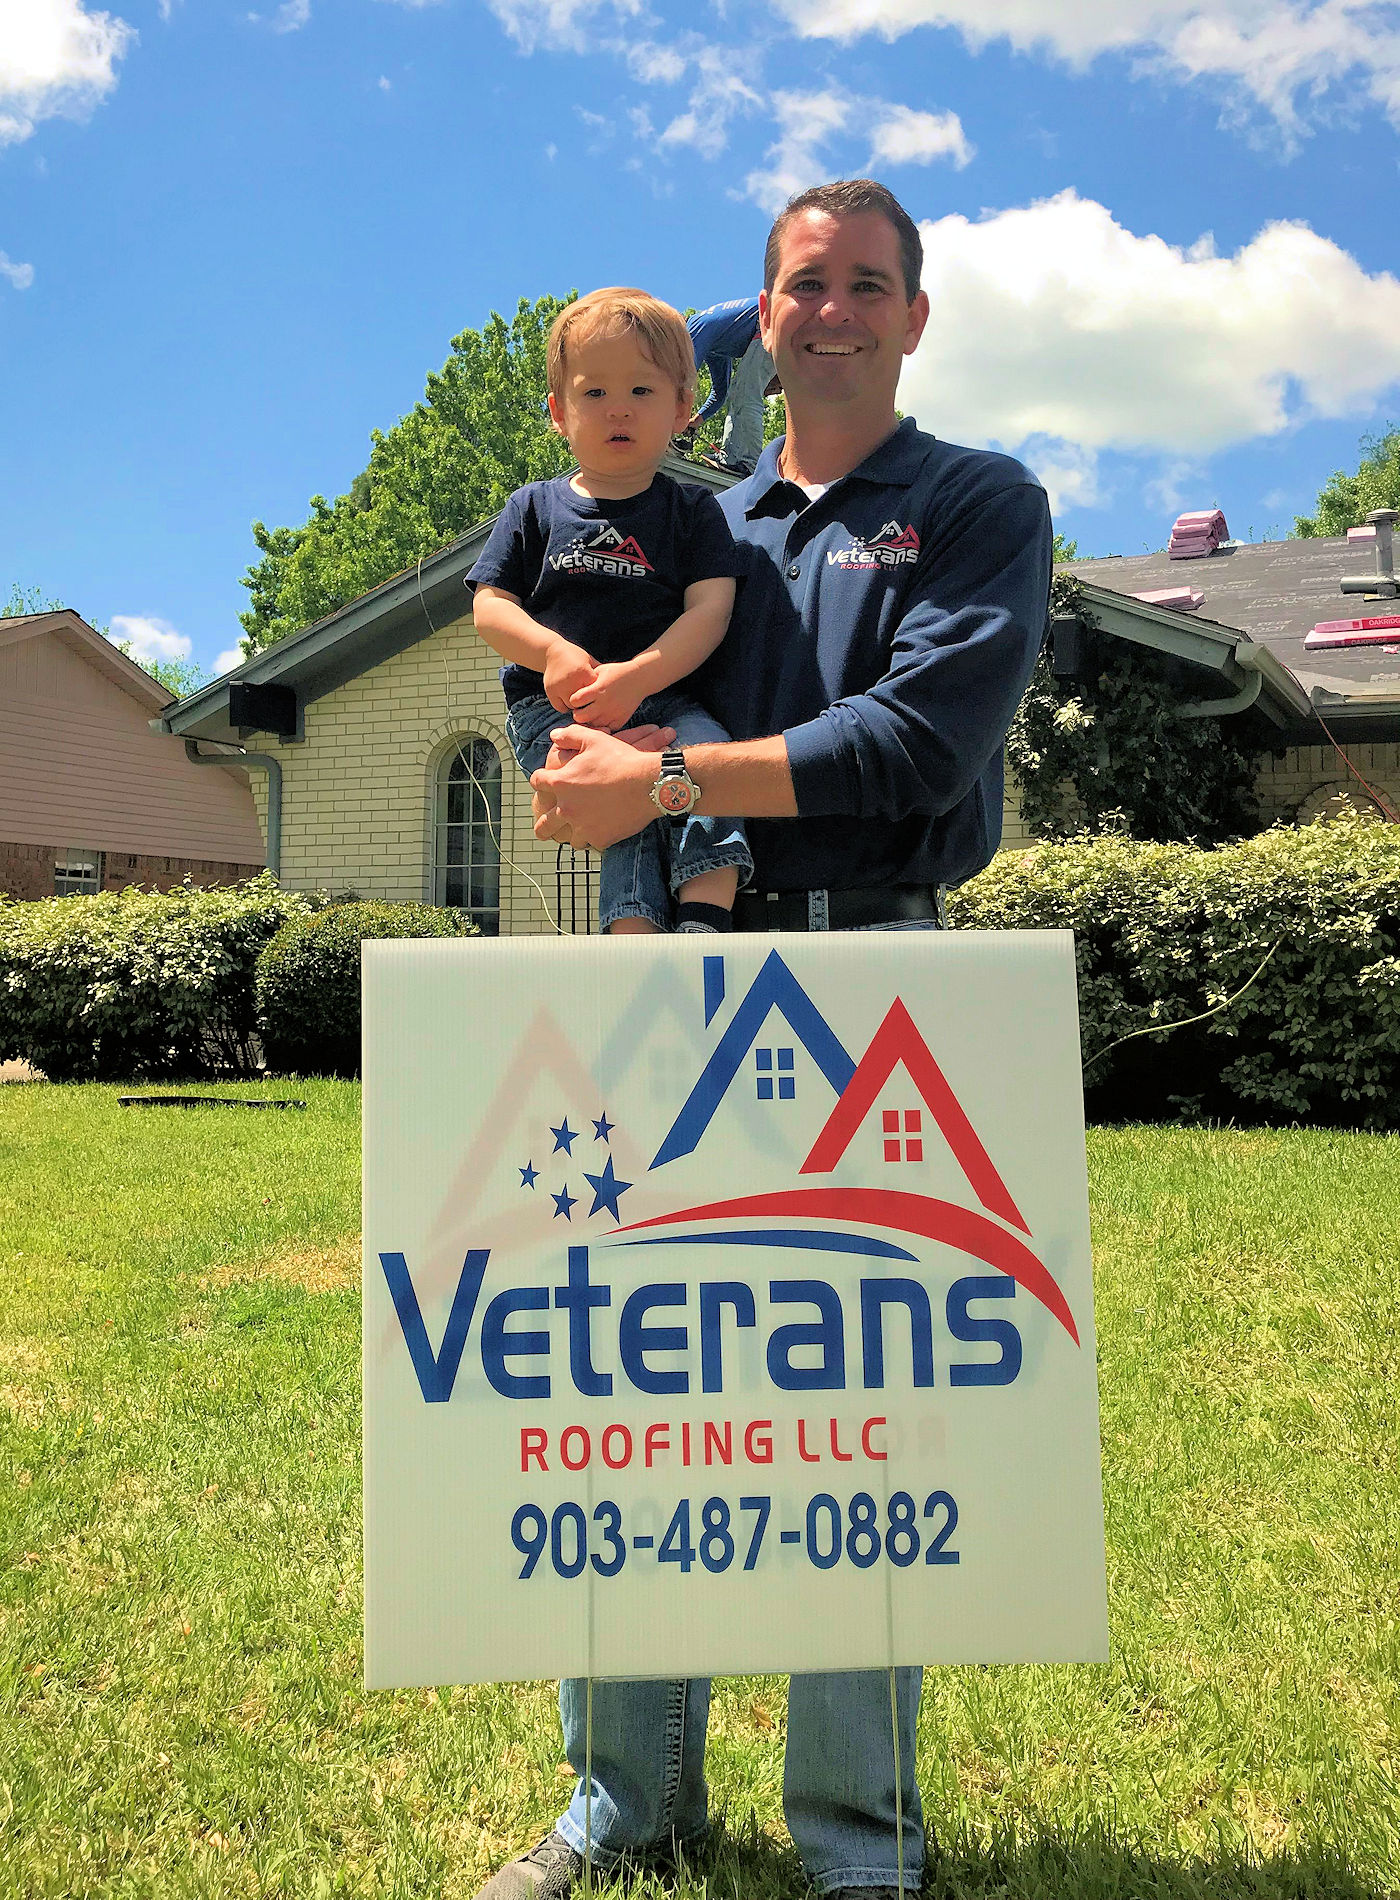 Veterans Roofing LLC - Sherman Texas Area Roofing Contractors